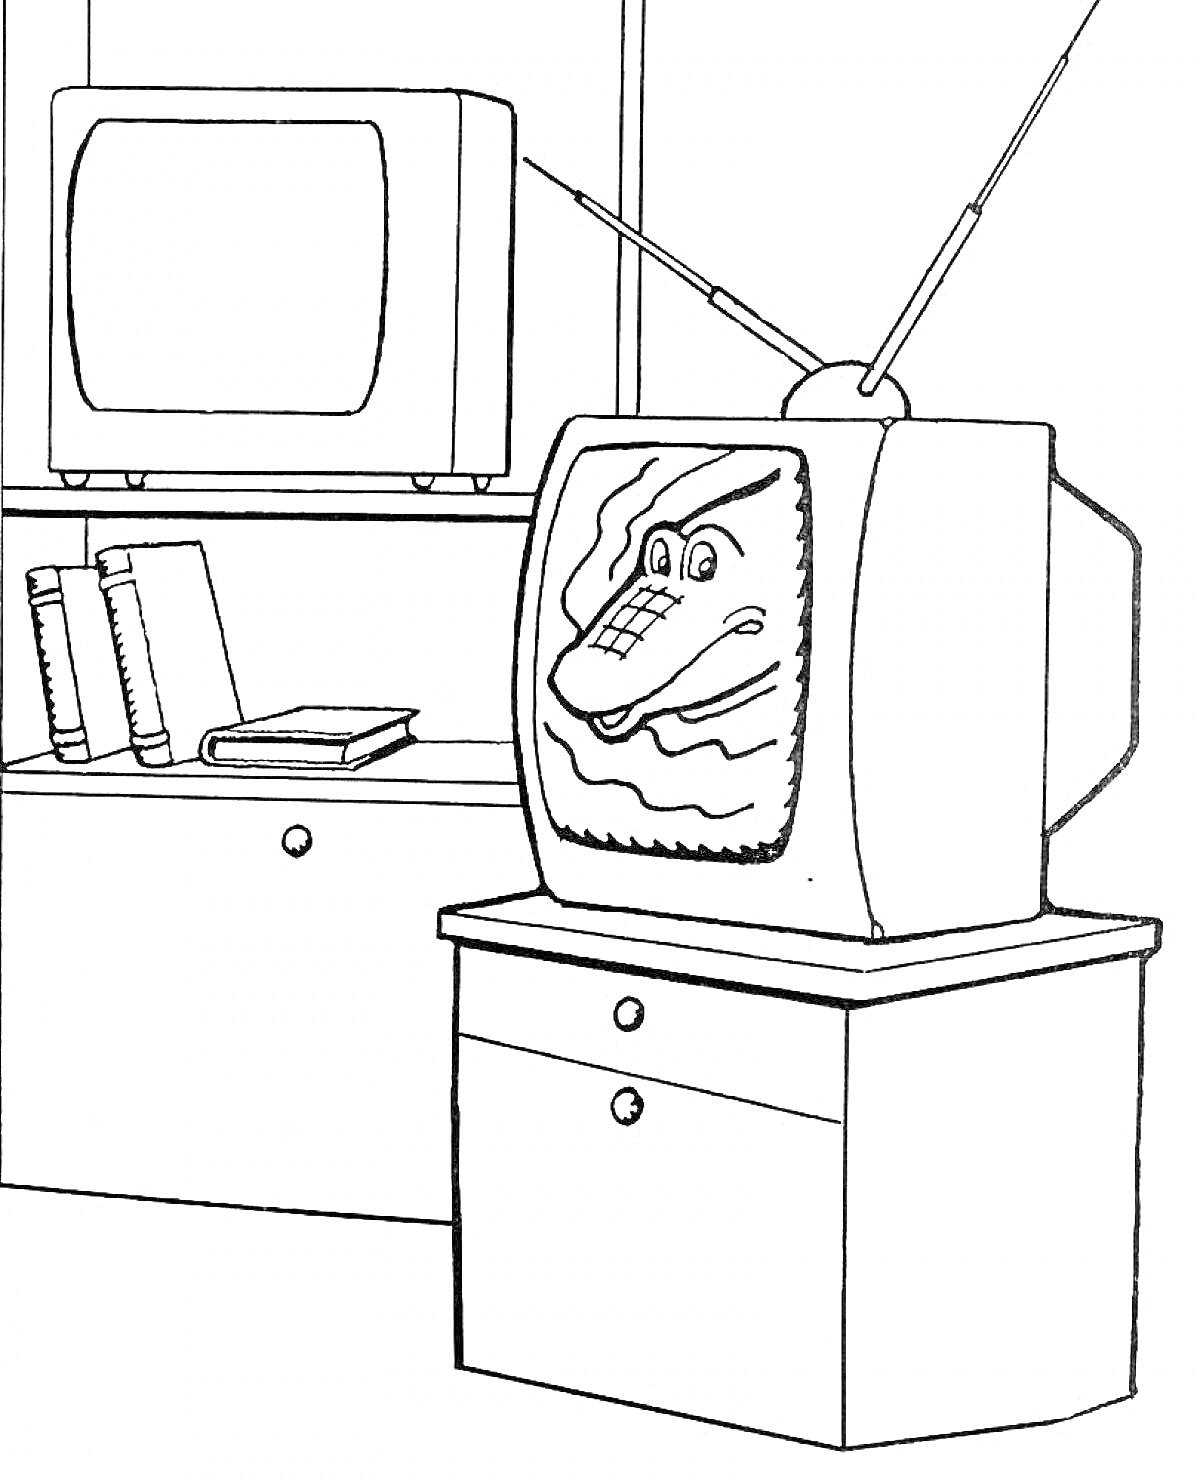 Телевизоры на тумбочках с антеннами, книги на полке, крокодил на экране